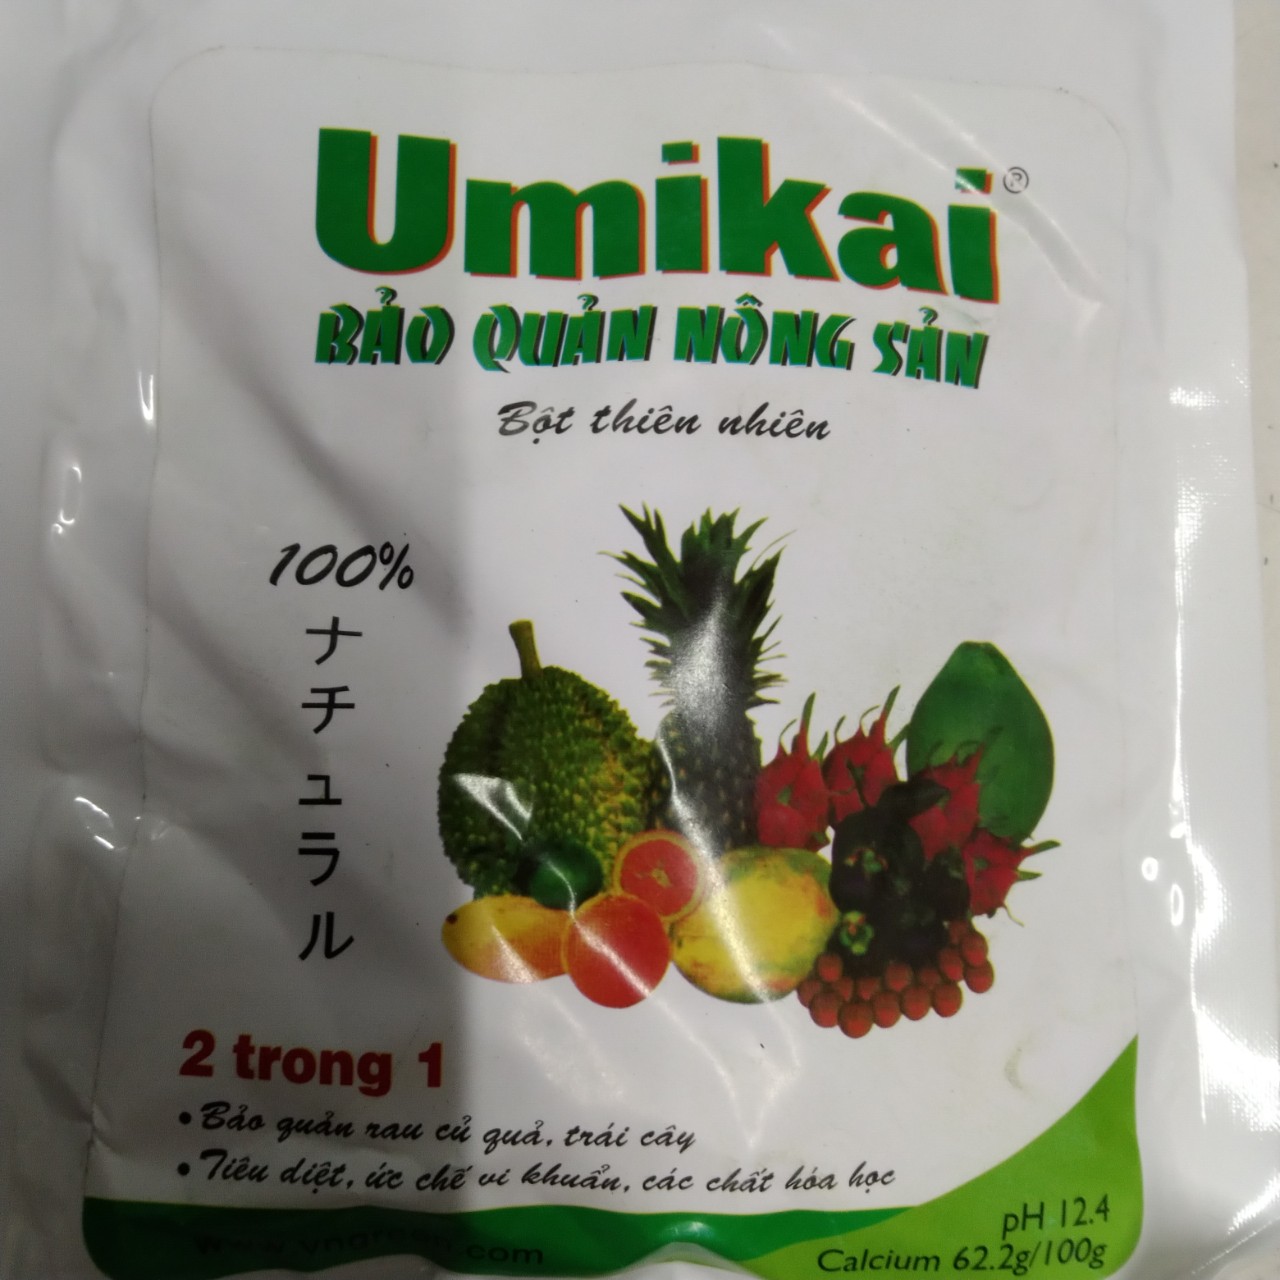 UMIKAI 250gram - Bột thiên nhiên bảo quản nông sản rau củ quả